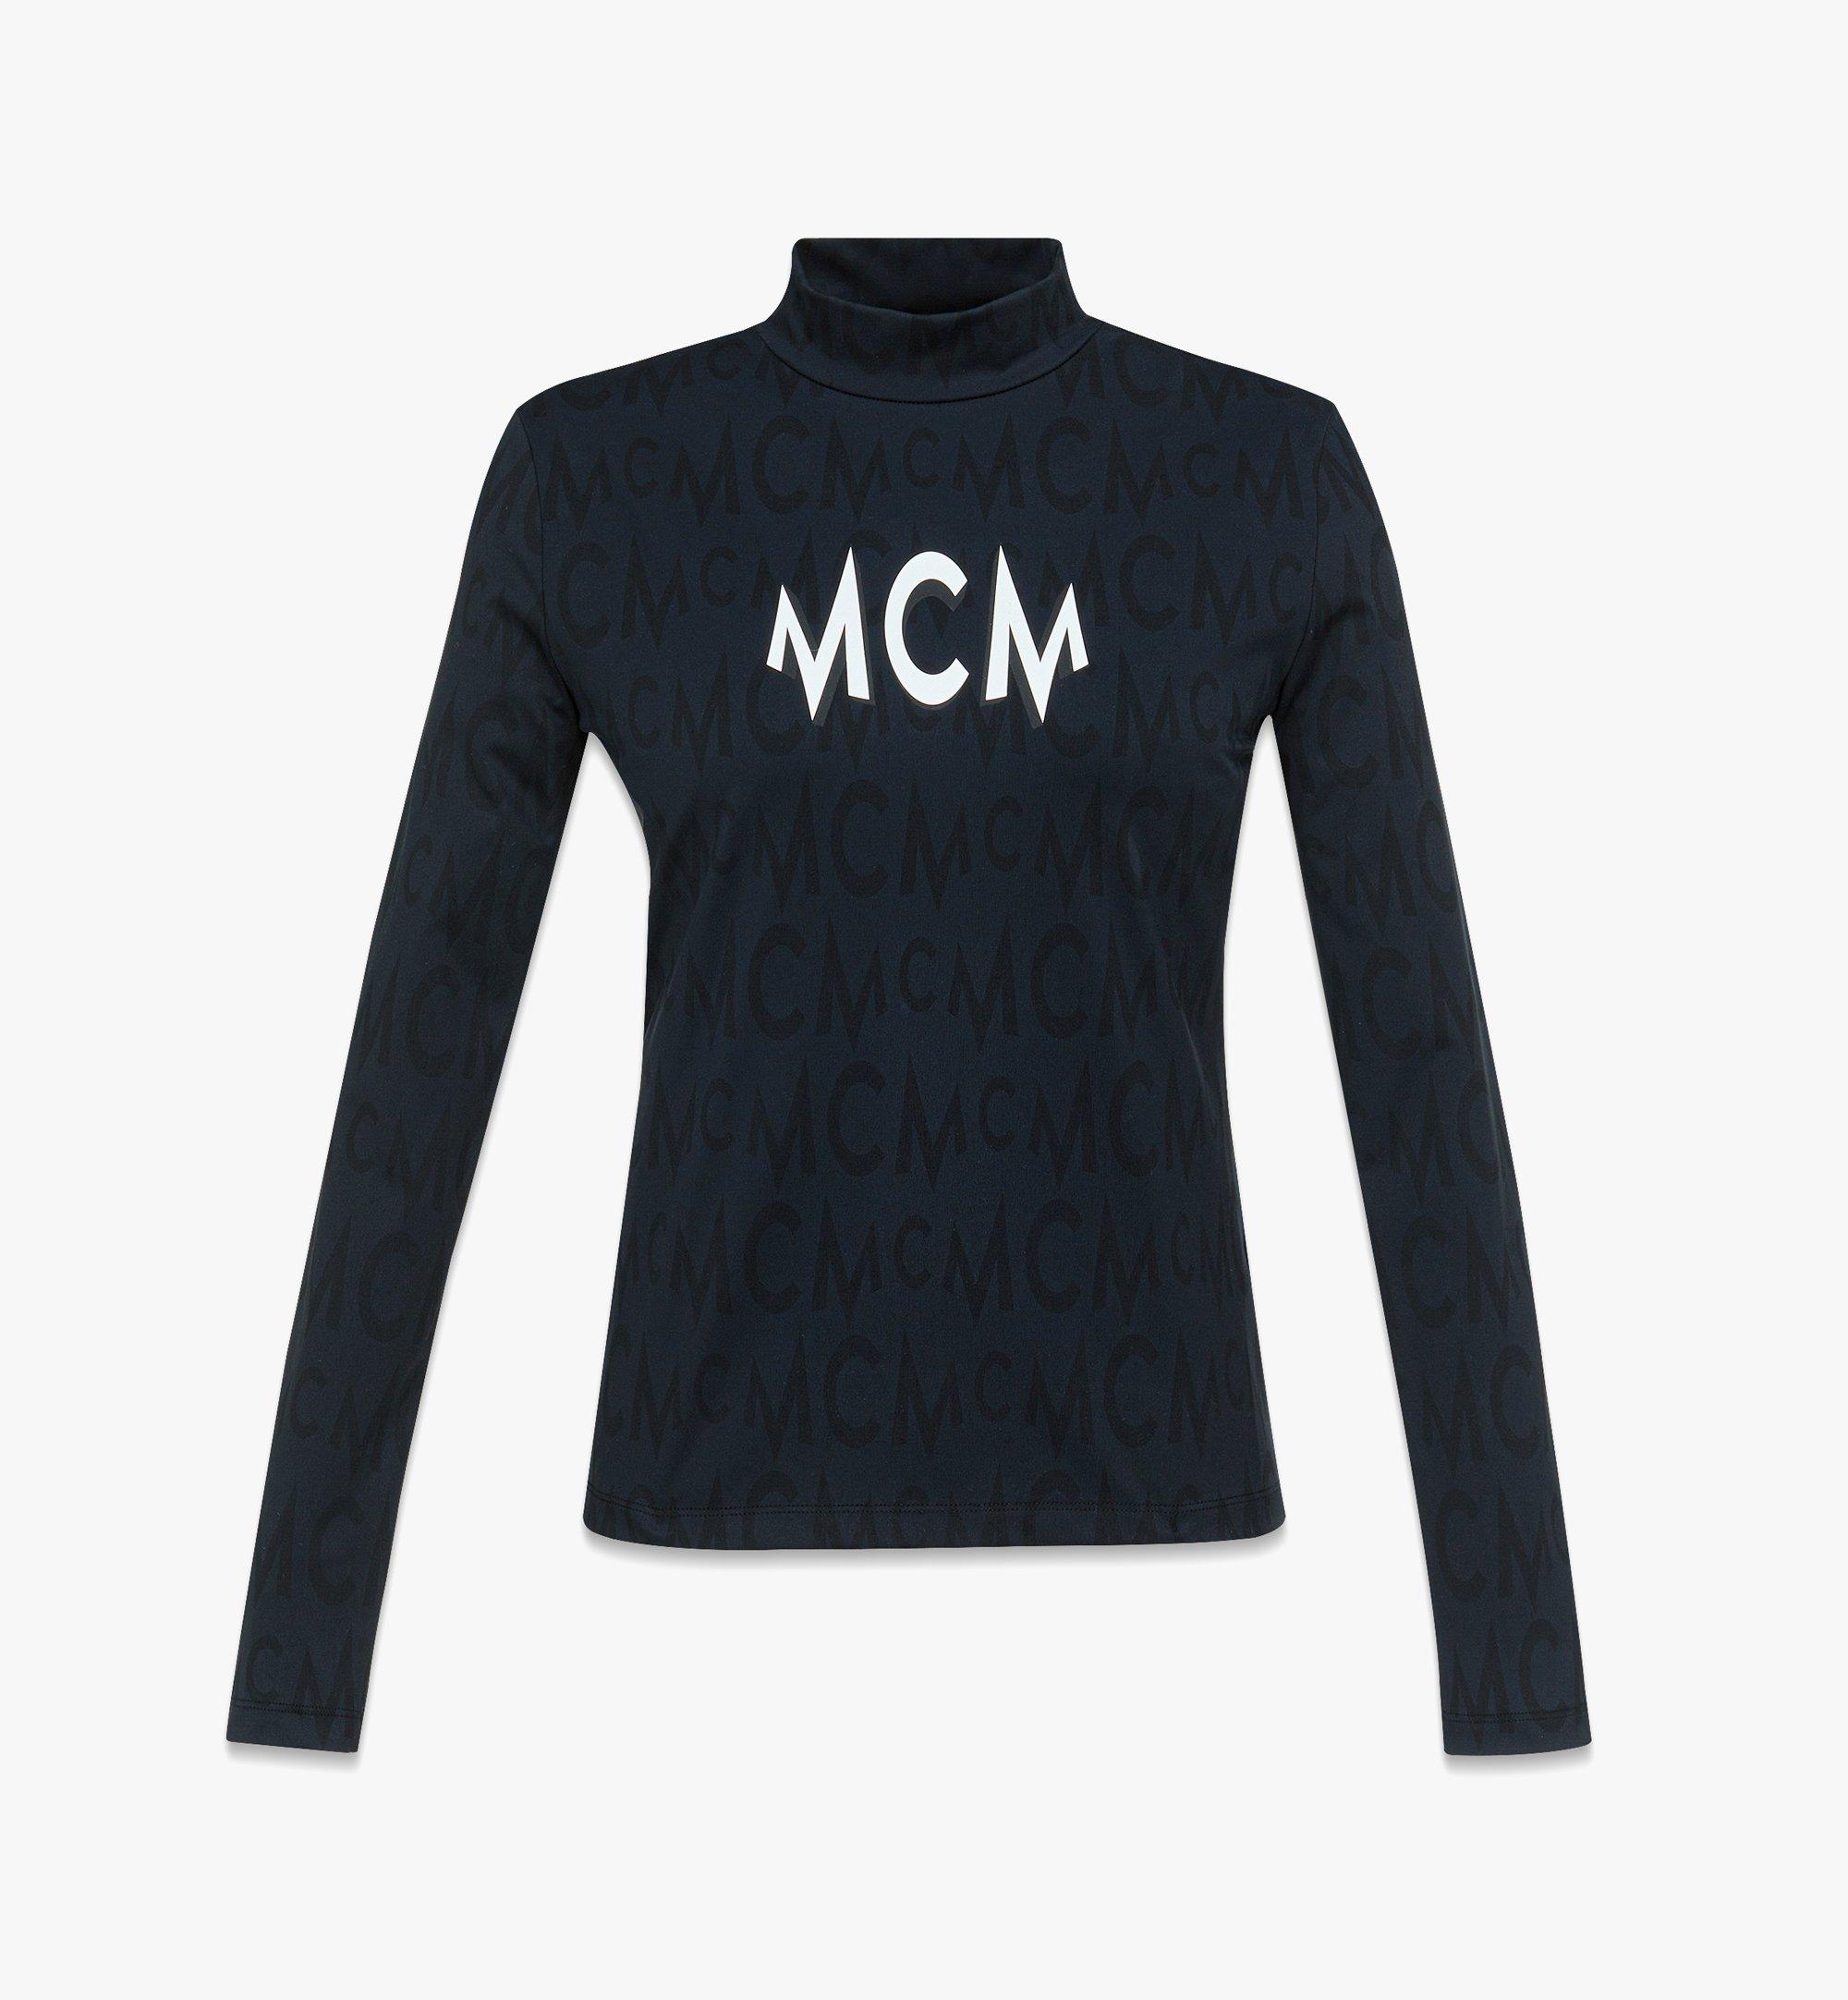 MCM T-shirt à manches longues monogrammé en nylon recyclé Black MFTDAMM06BK00L Plus de photos 1